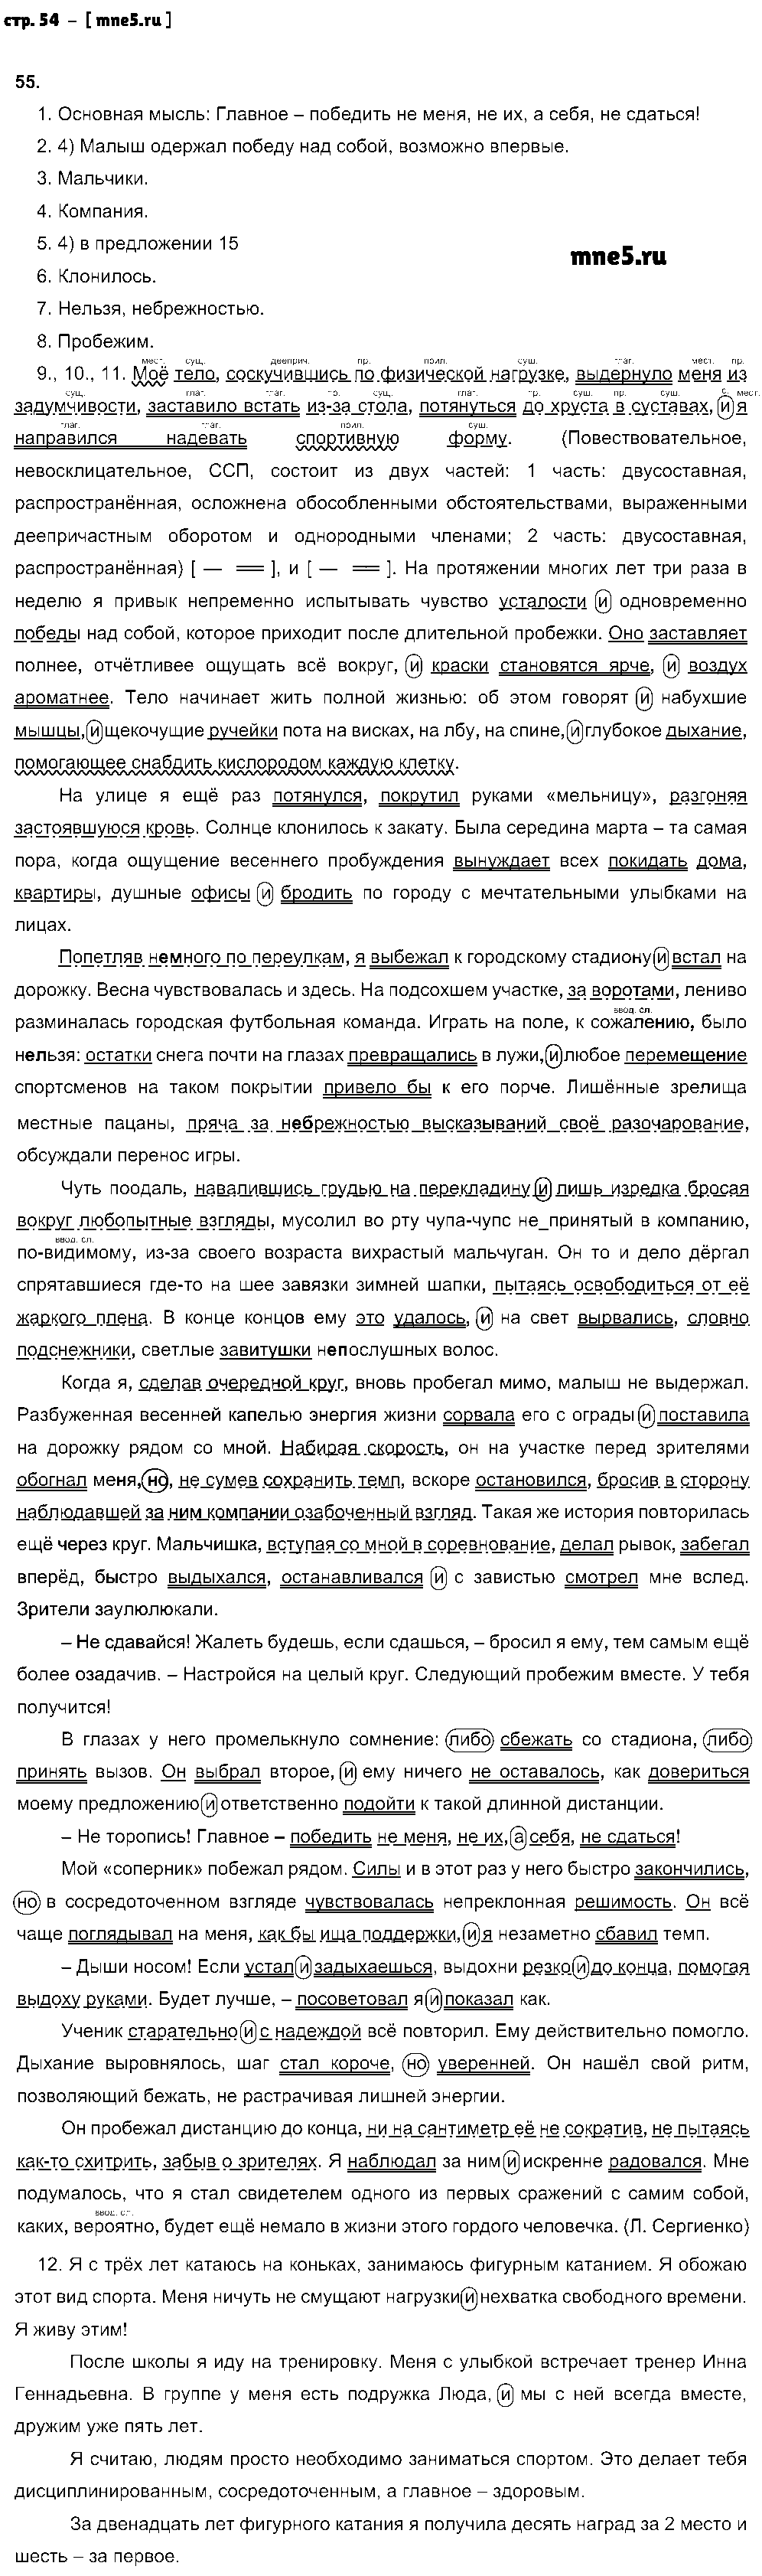 ГДЗ Русский язык 9 класс - стр. 54